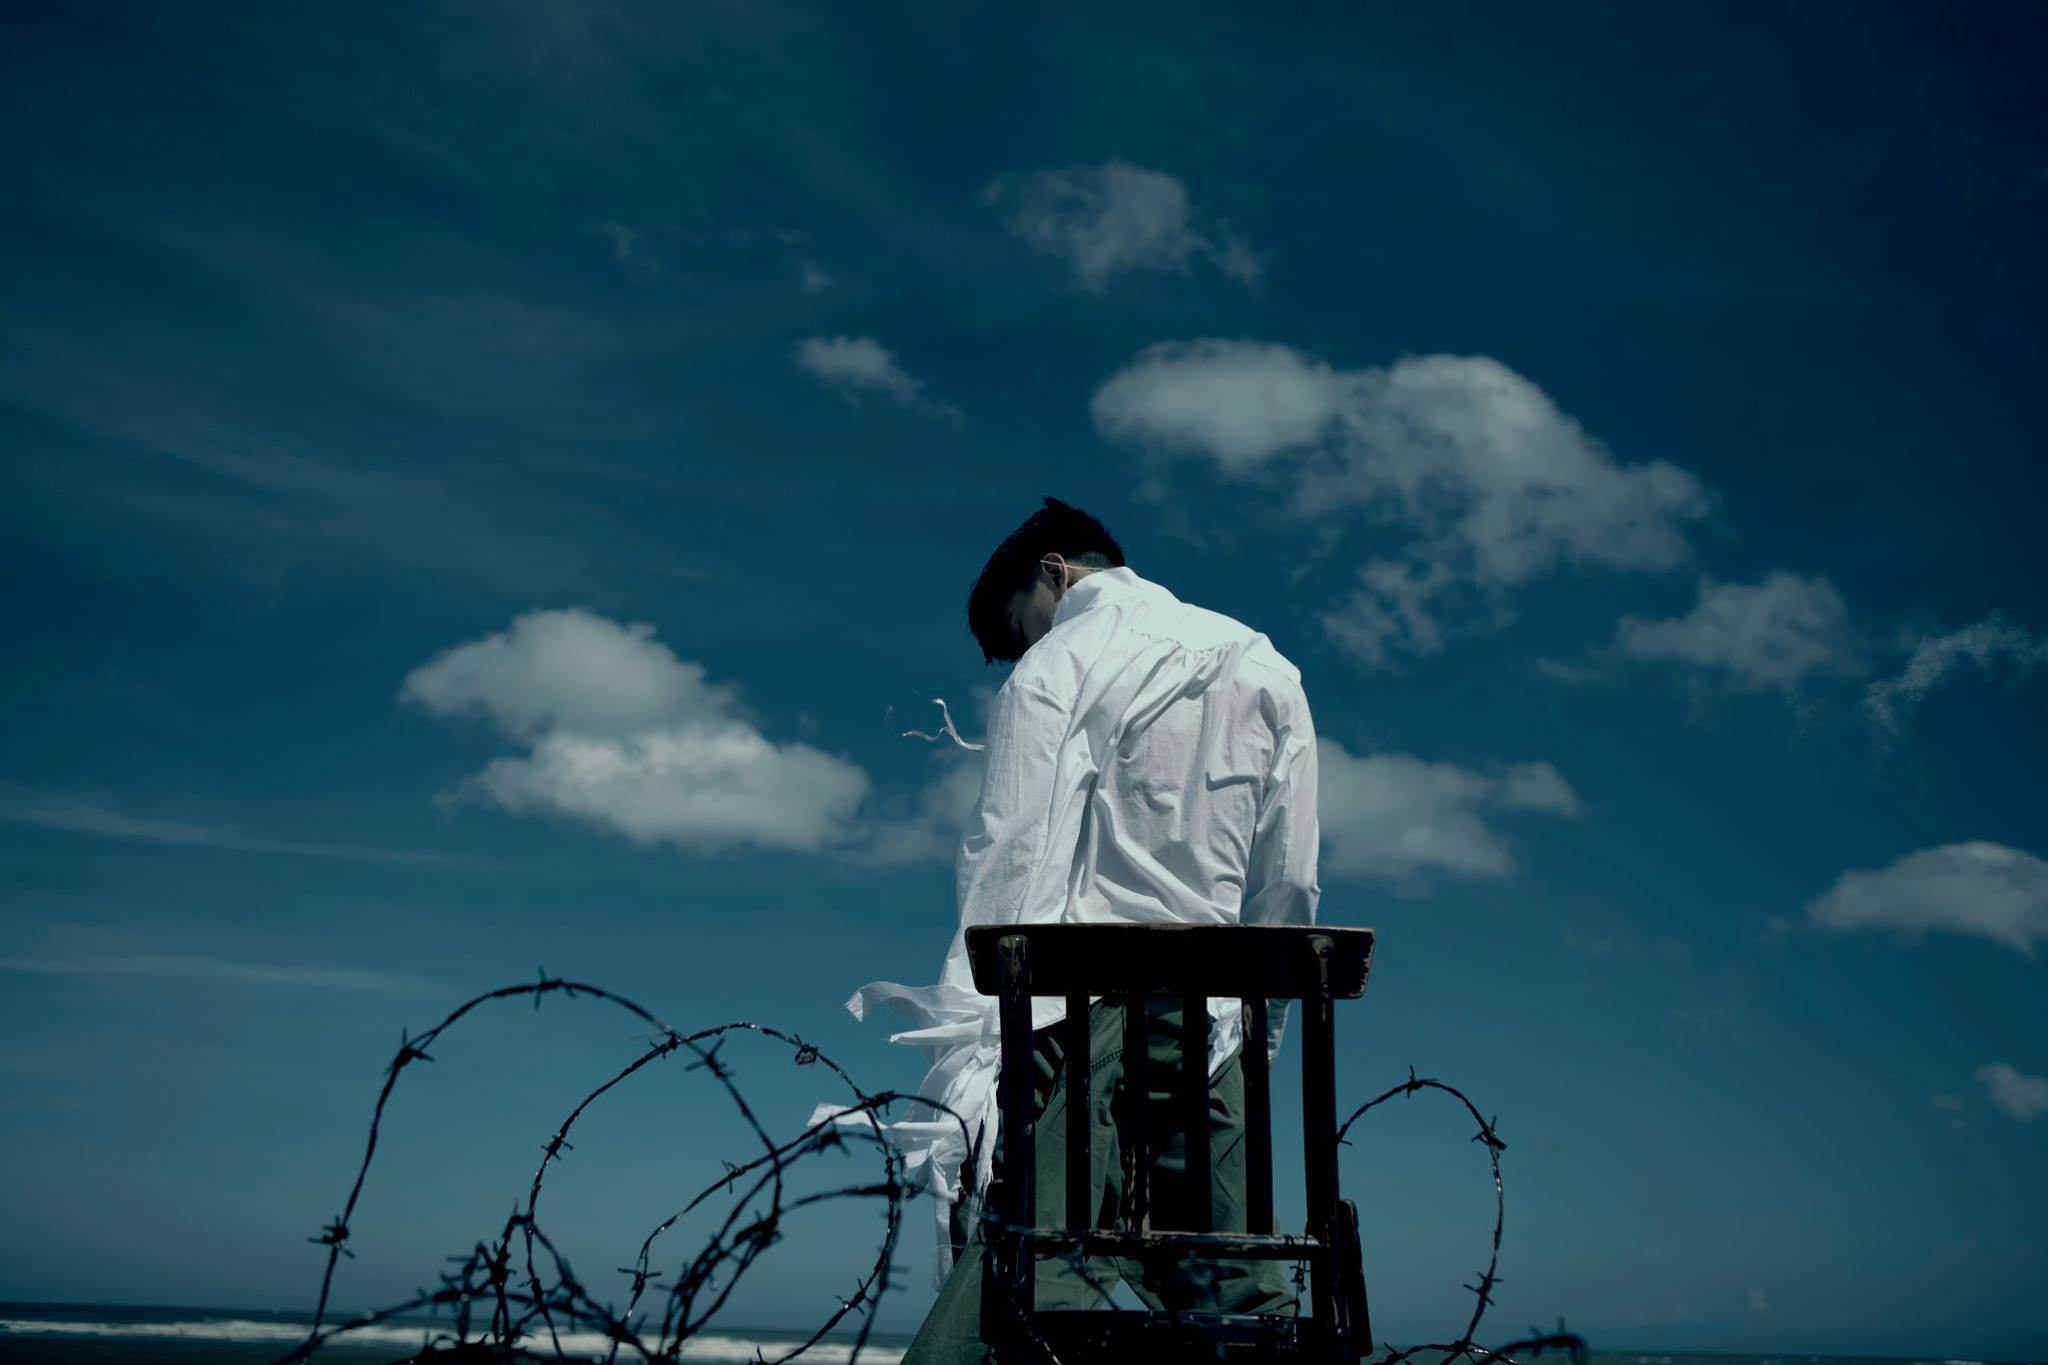 林俊杰全新专辑《伟大的渺小》1月5日上线网易云音乐